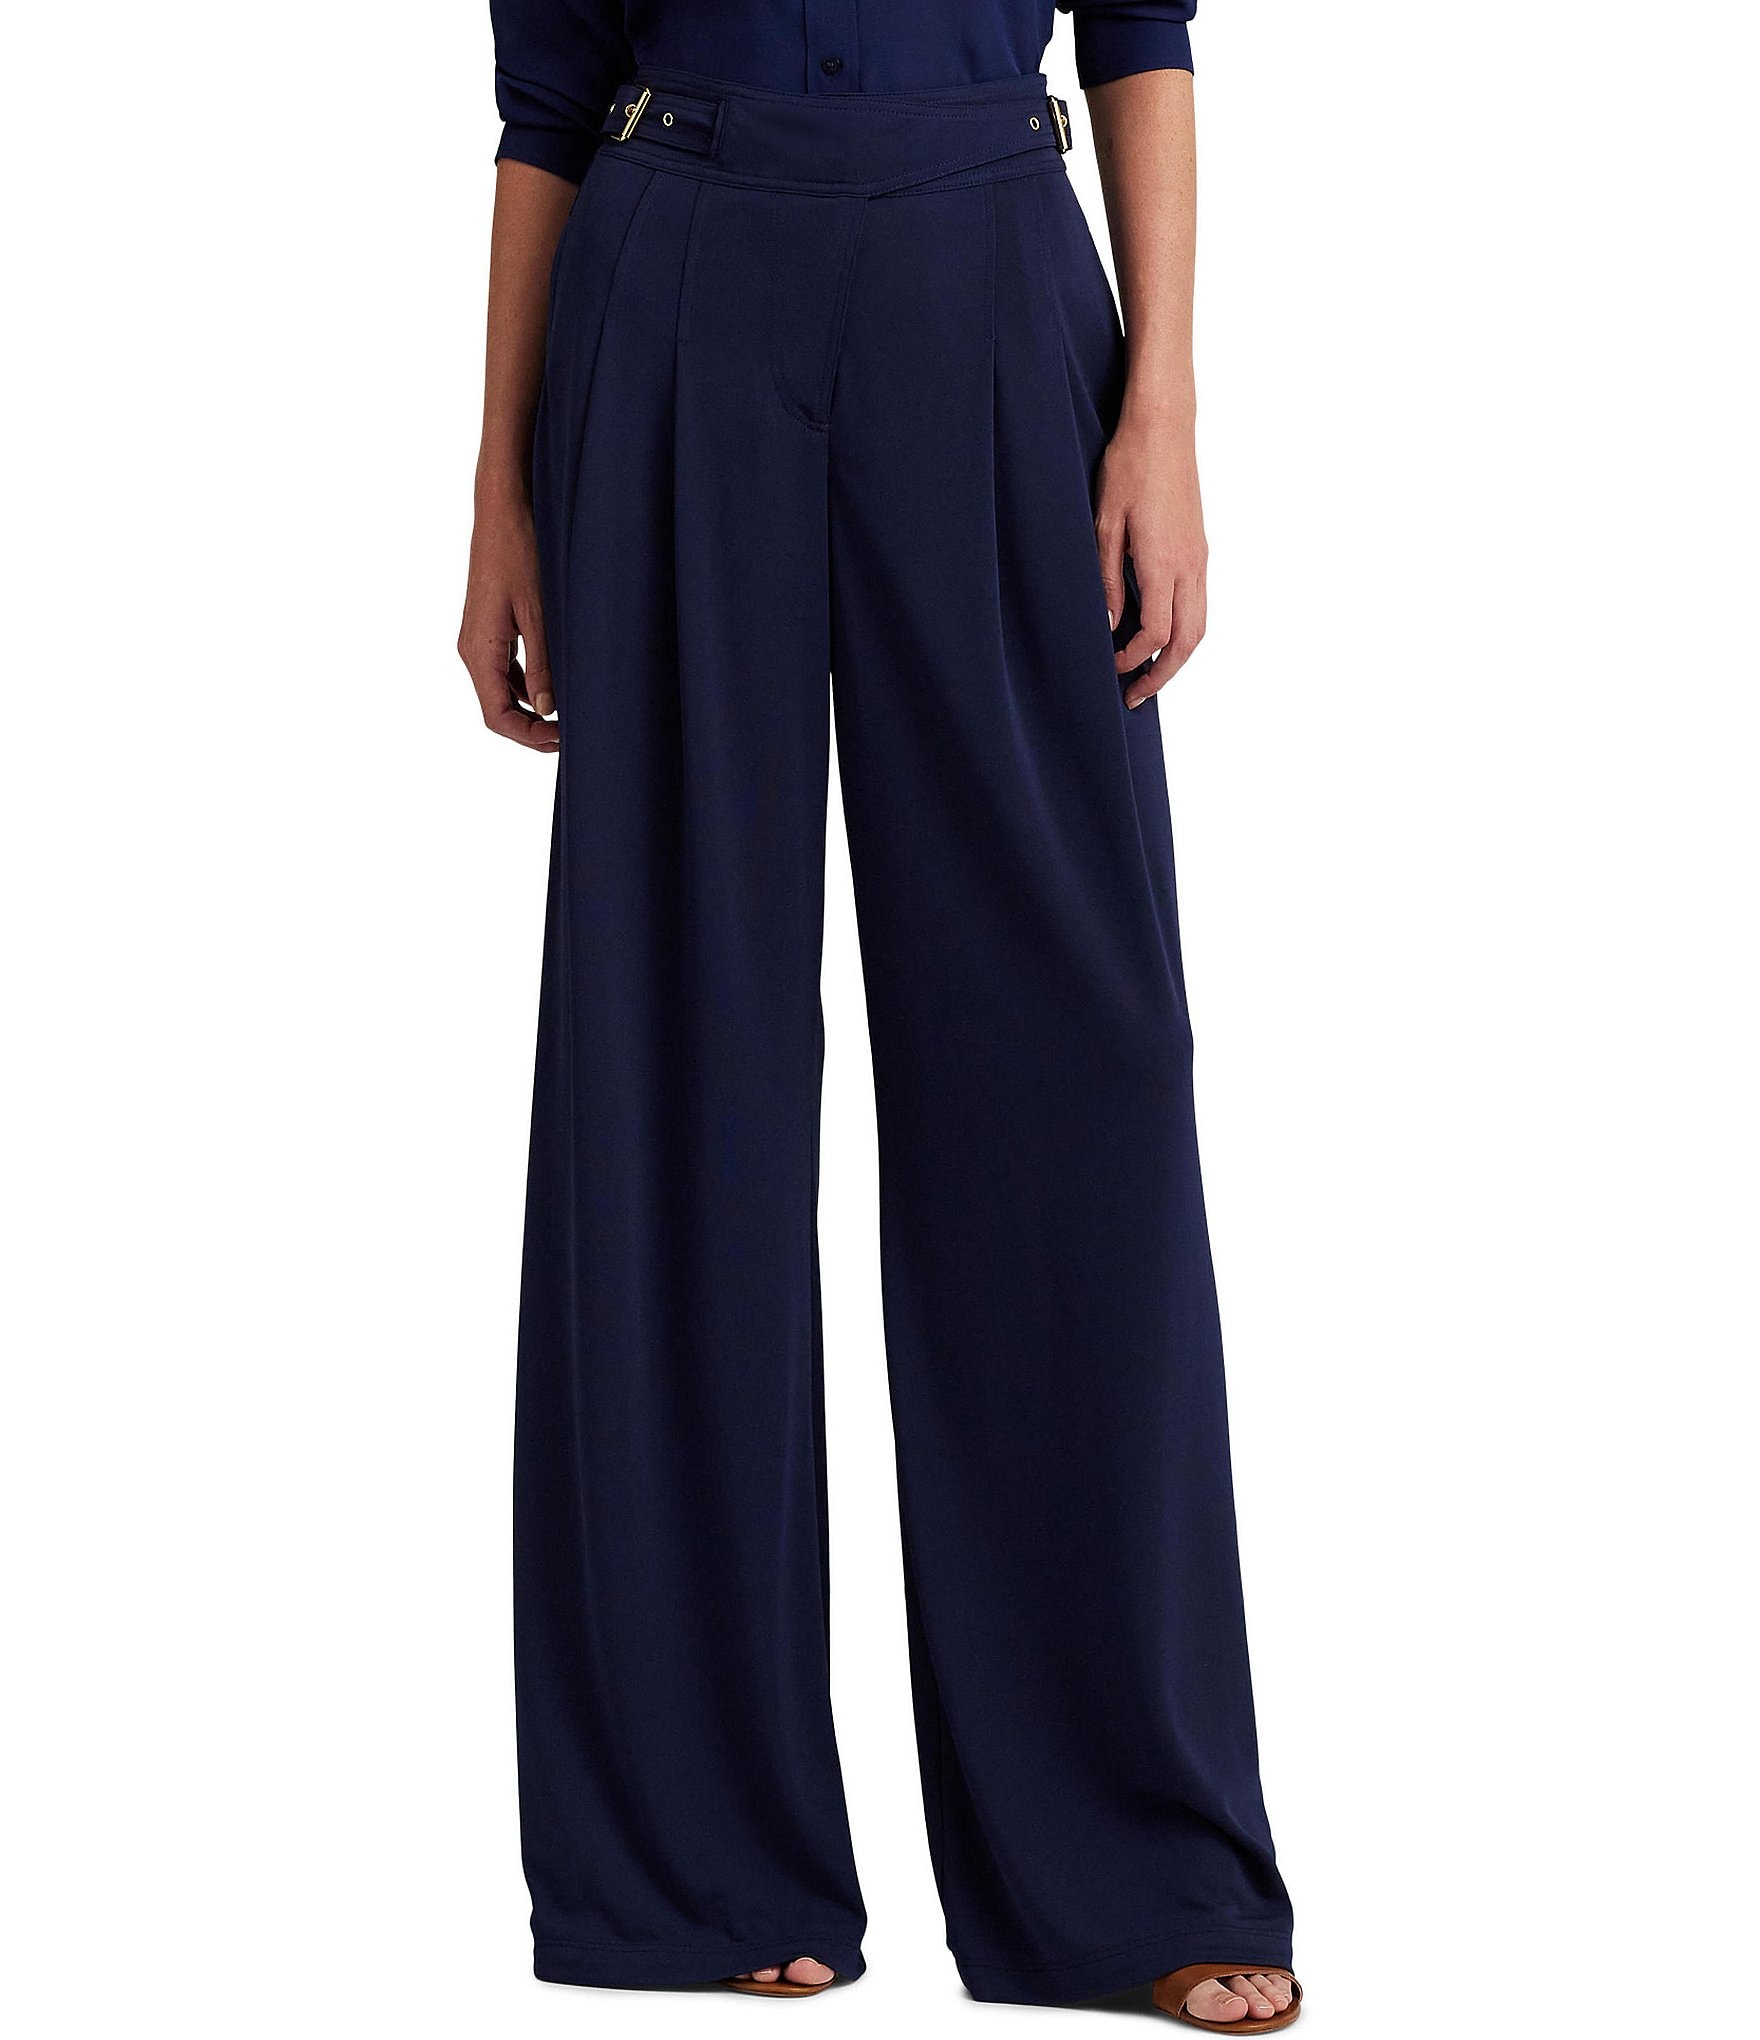 The printed pants navy blue Ralph Lauren of Guy2Bezbar in her